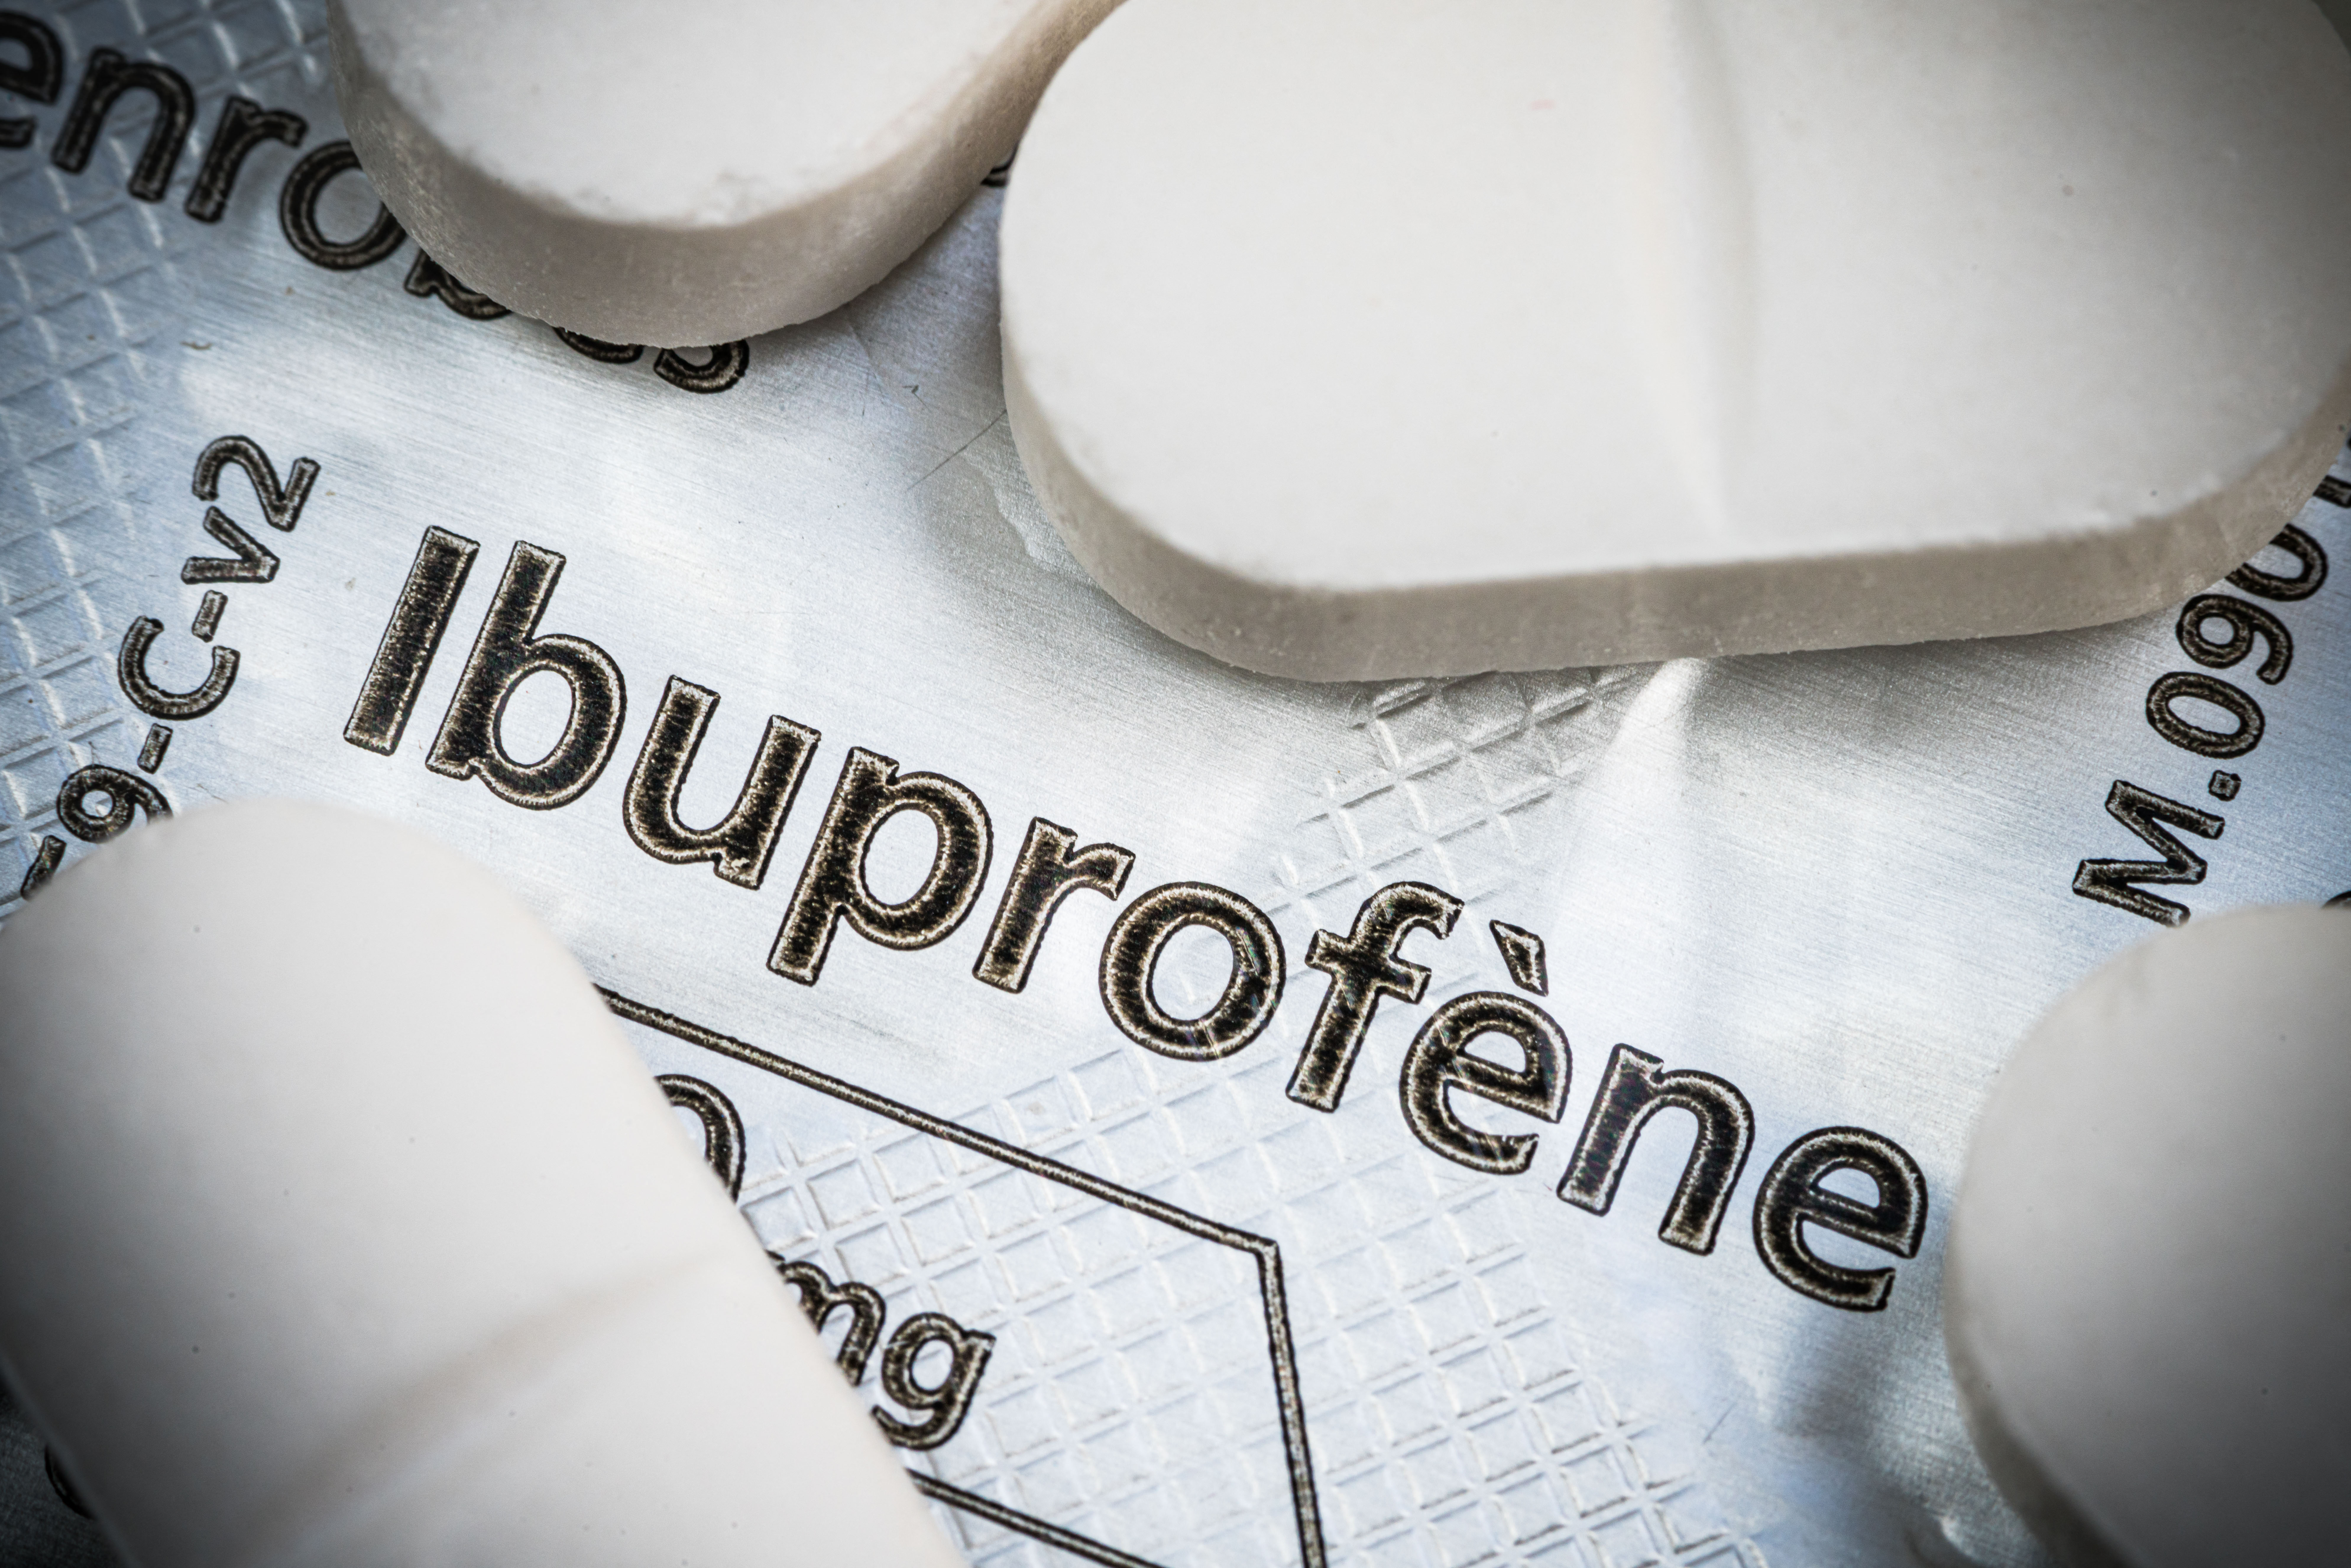 Egy a hagyományos szamoai gyógyászatban használt növény olyan hatásos lehet, mint az ibuprofen